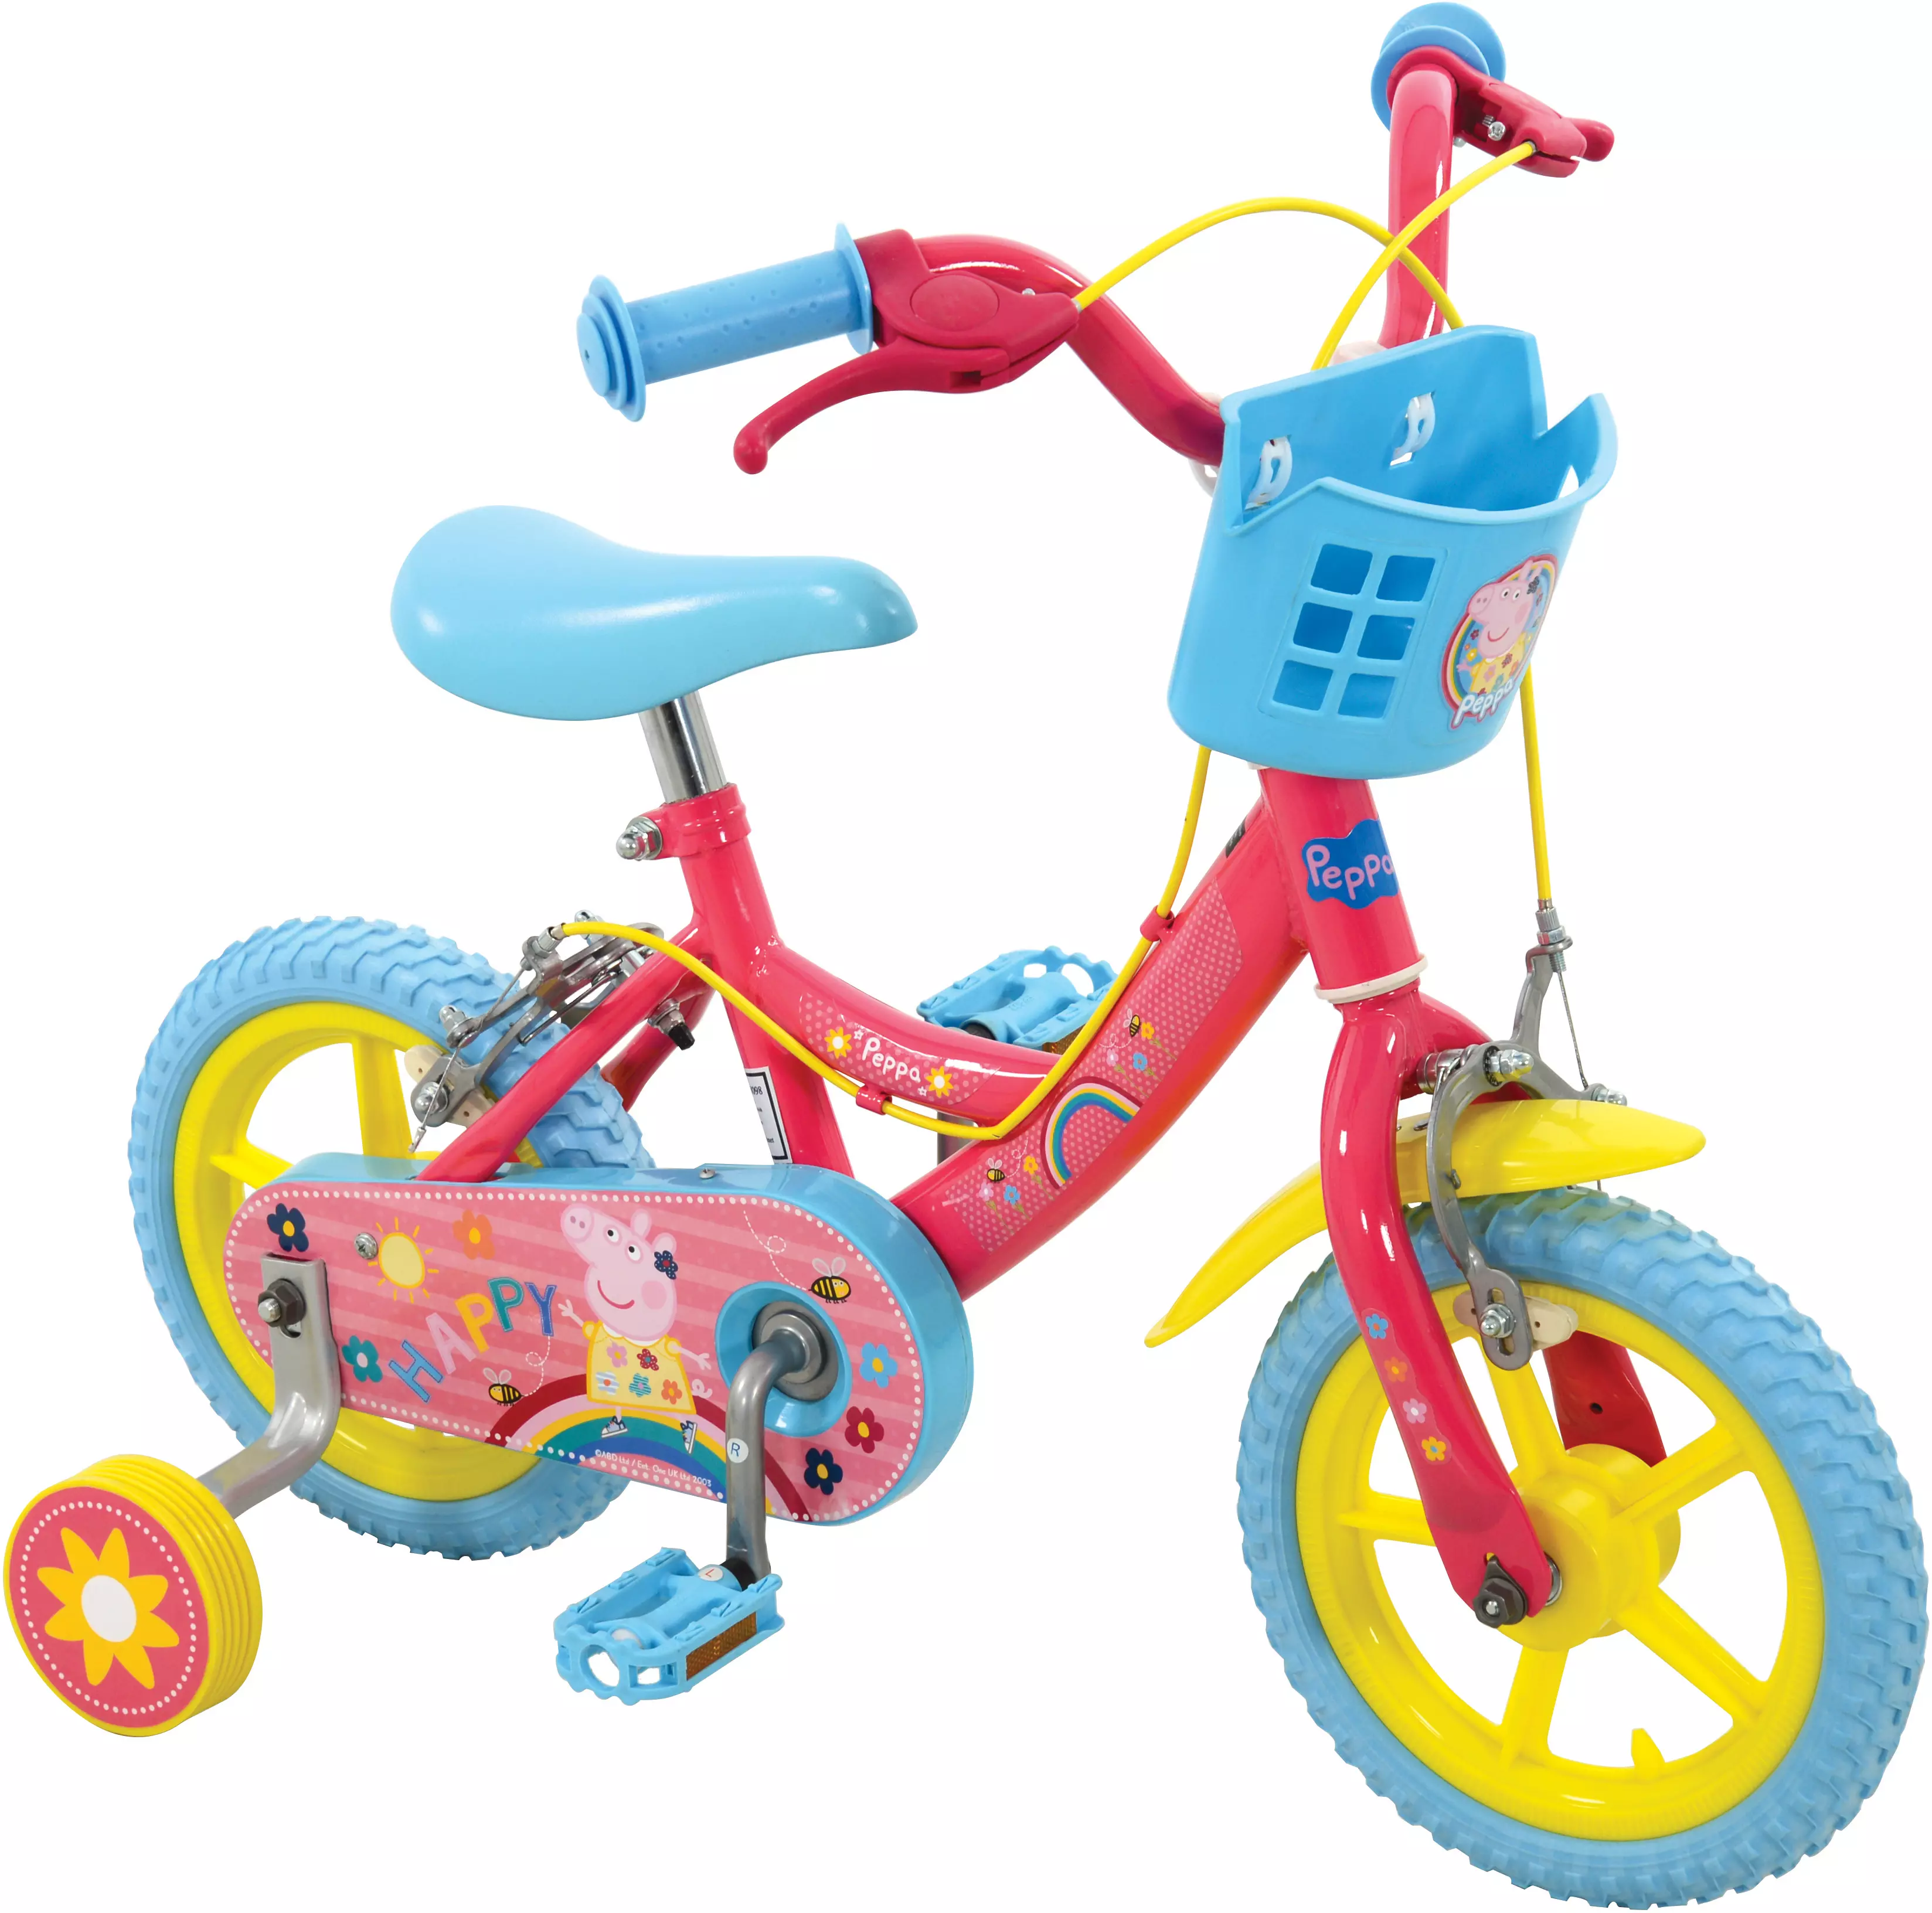 peppa pig tricycle